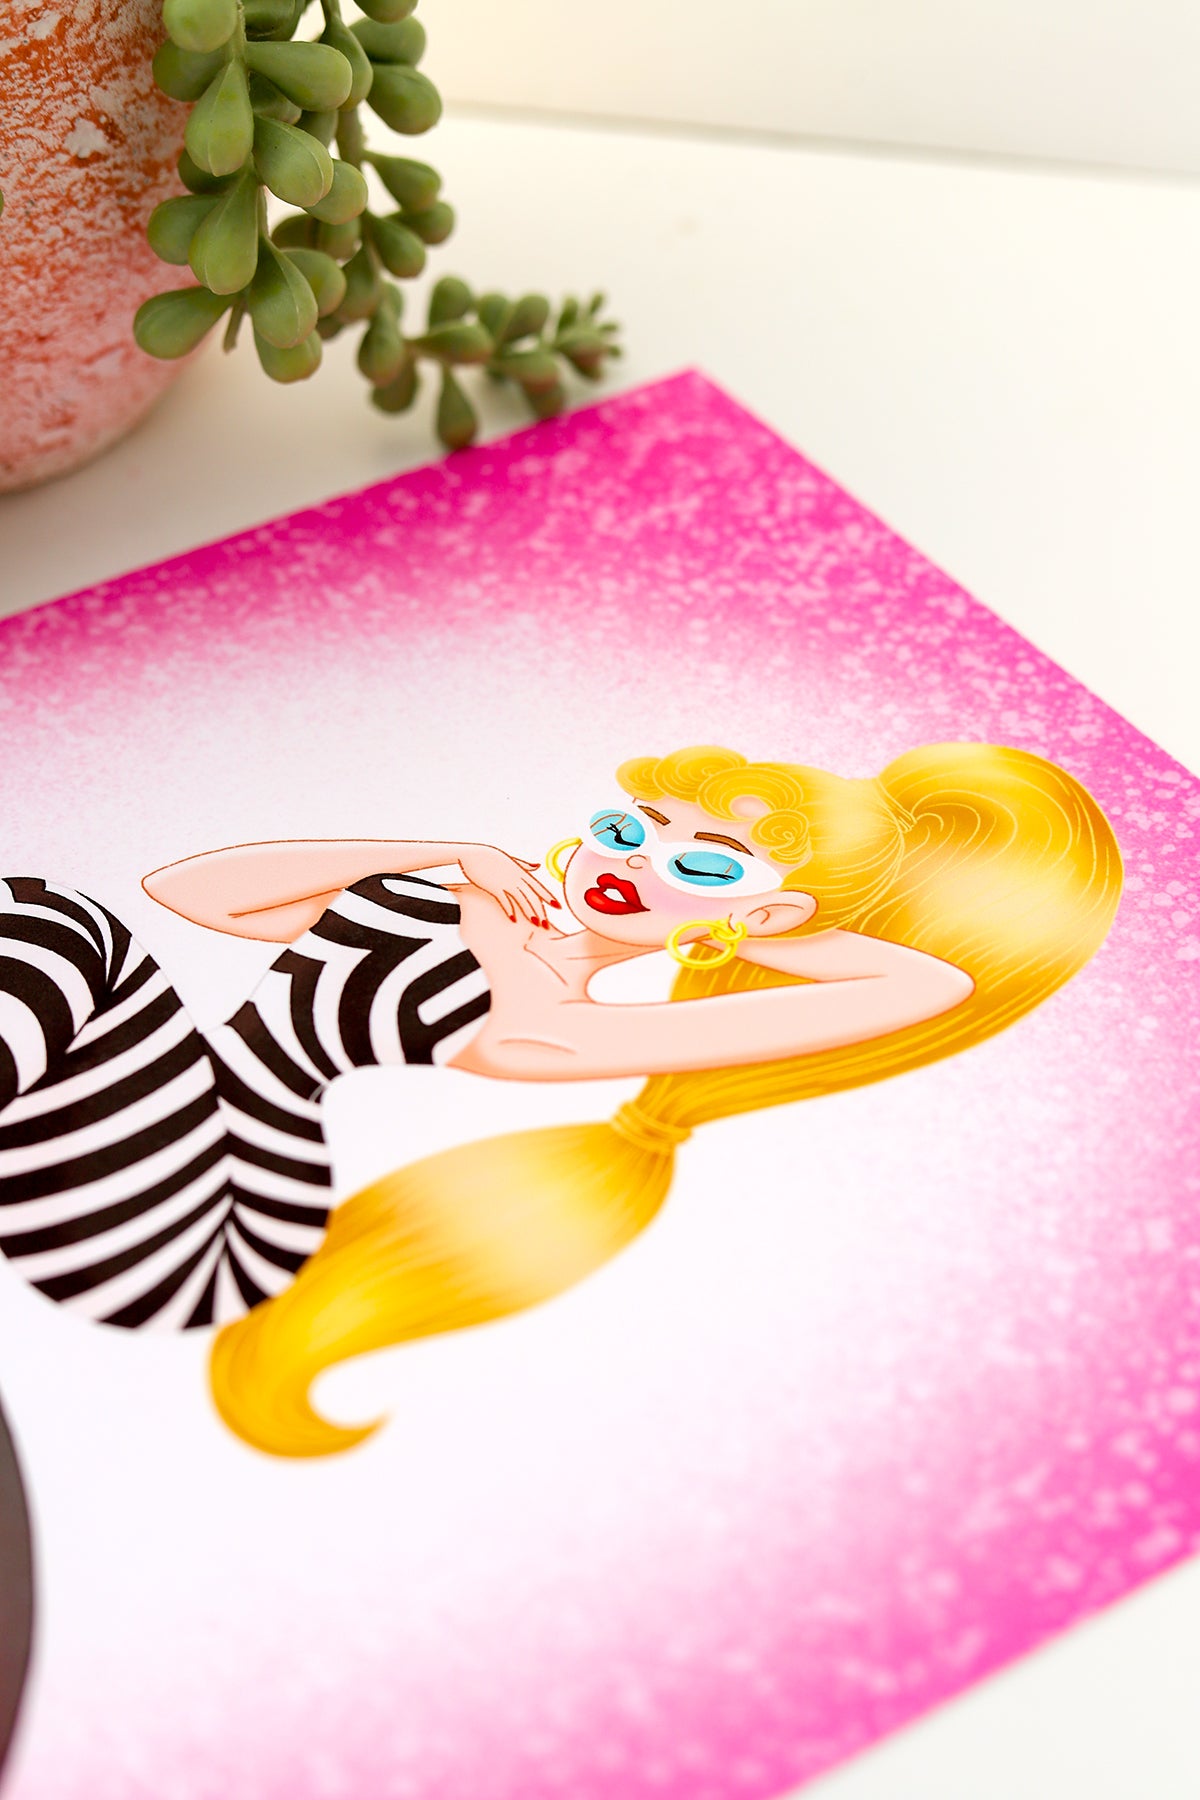 MerMay Day 29: "Barbie" Print